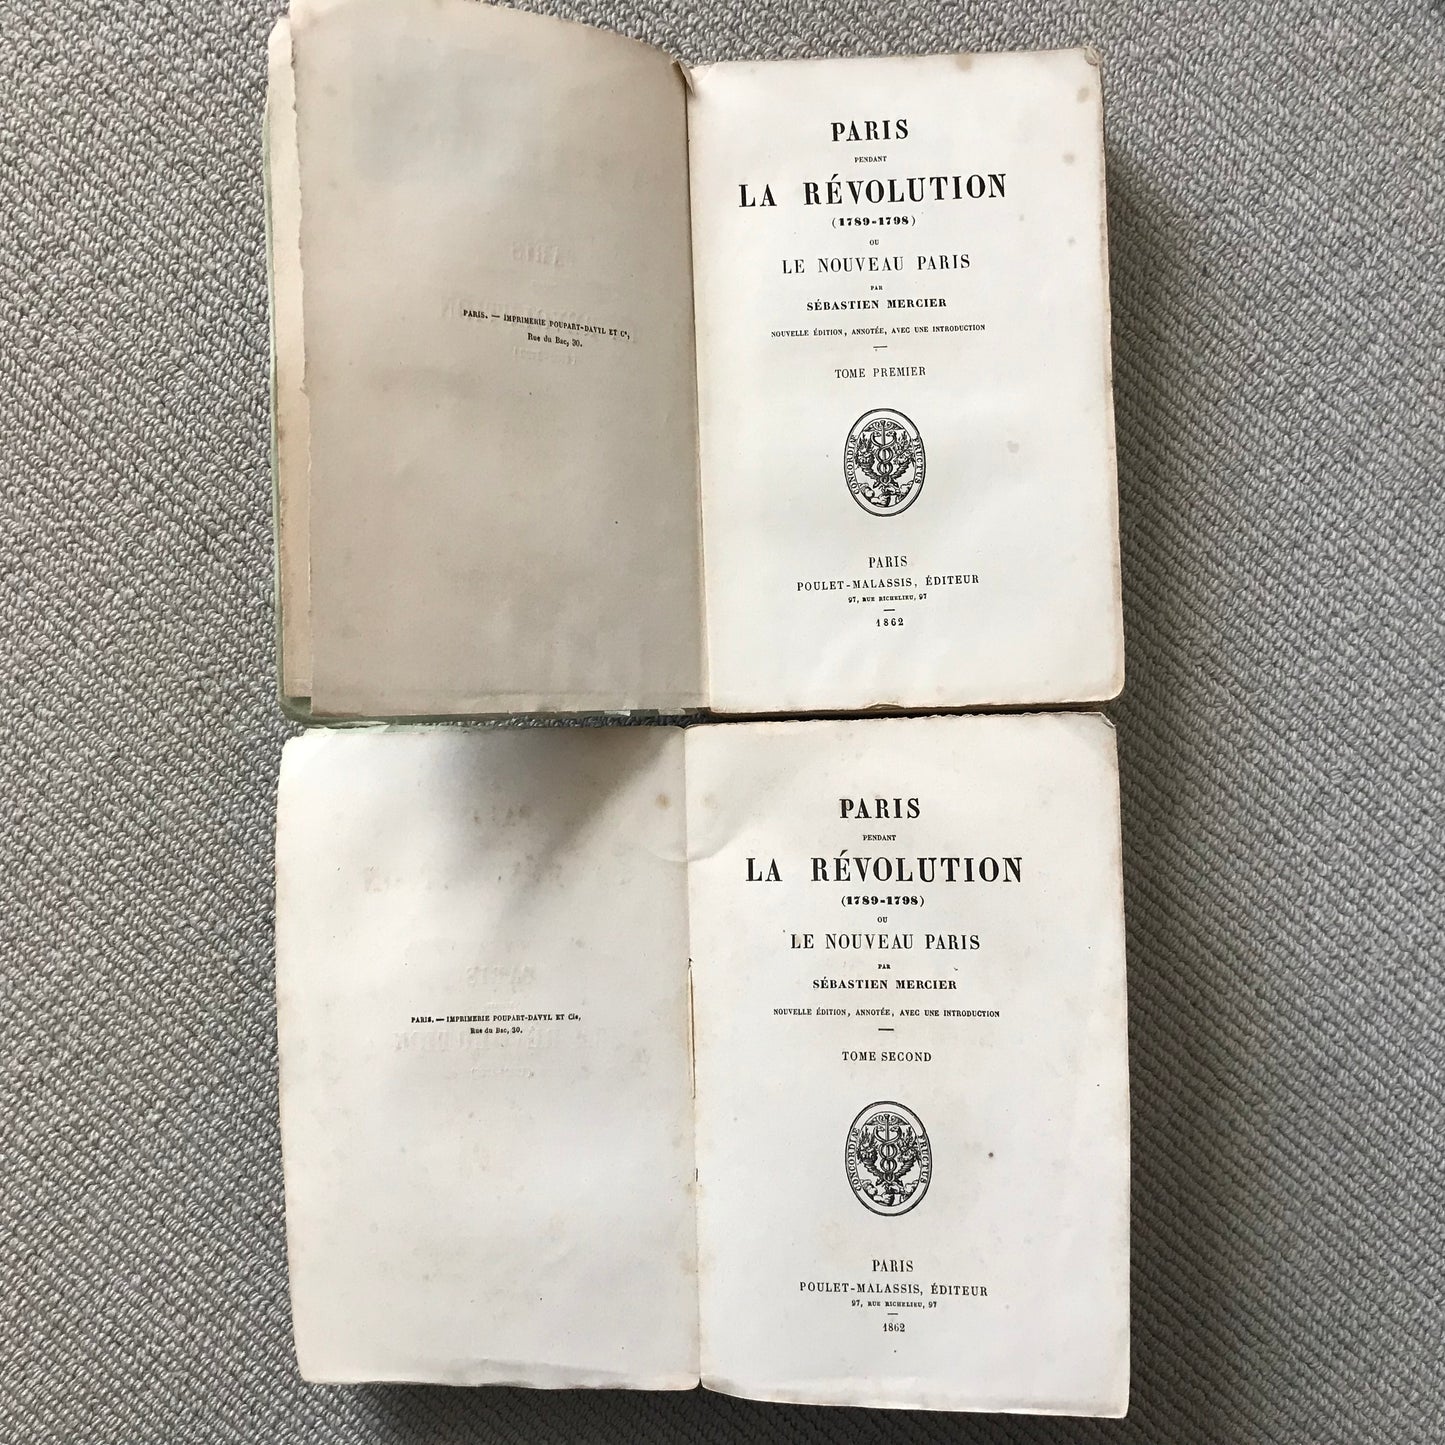 Mercier, S. - Paris pendant la Révolution (2 volumes)